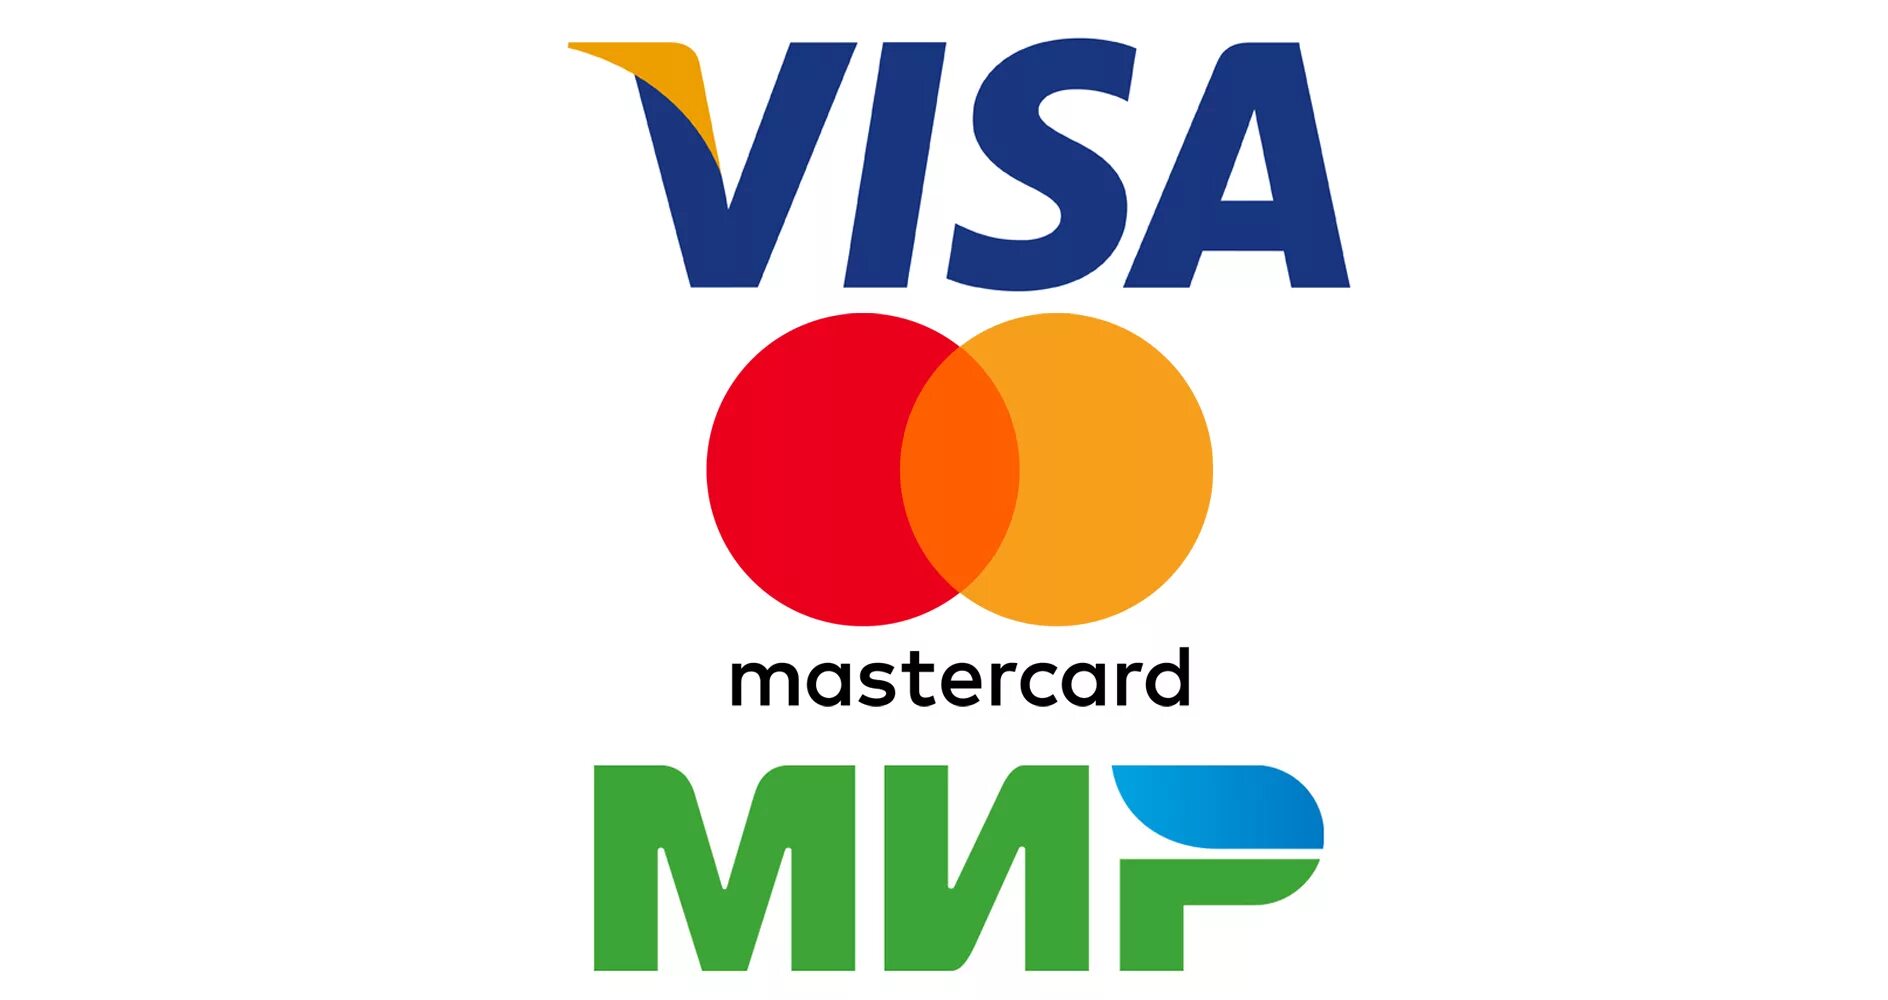 Оплата visa mastercard. Visa MASTERCARD мир. Логотип платежной системы visa. Оплата картой visa. Логотип visa MASTERCARD мир.